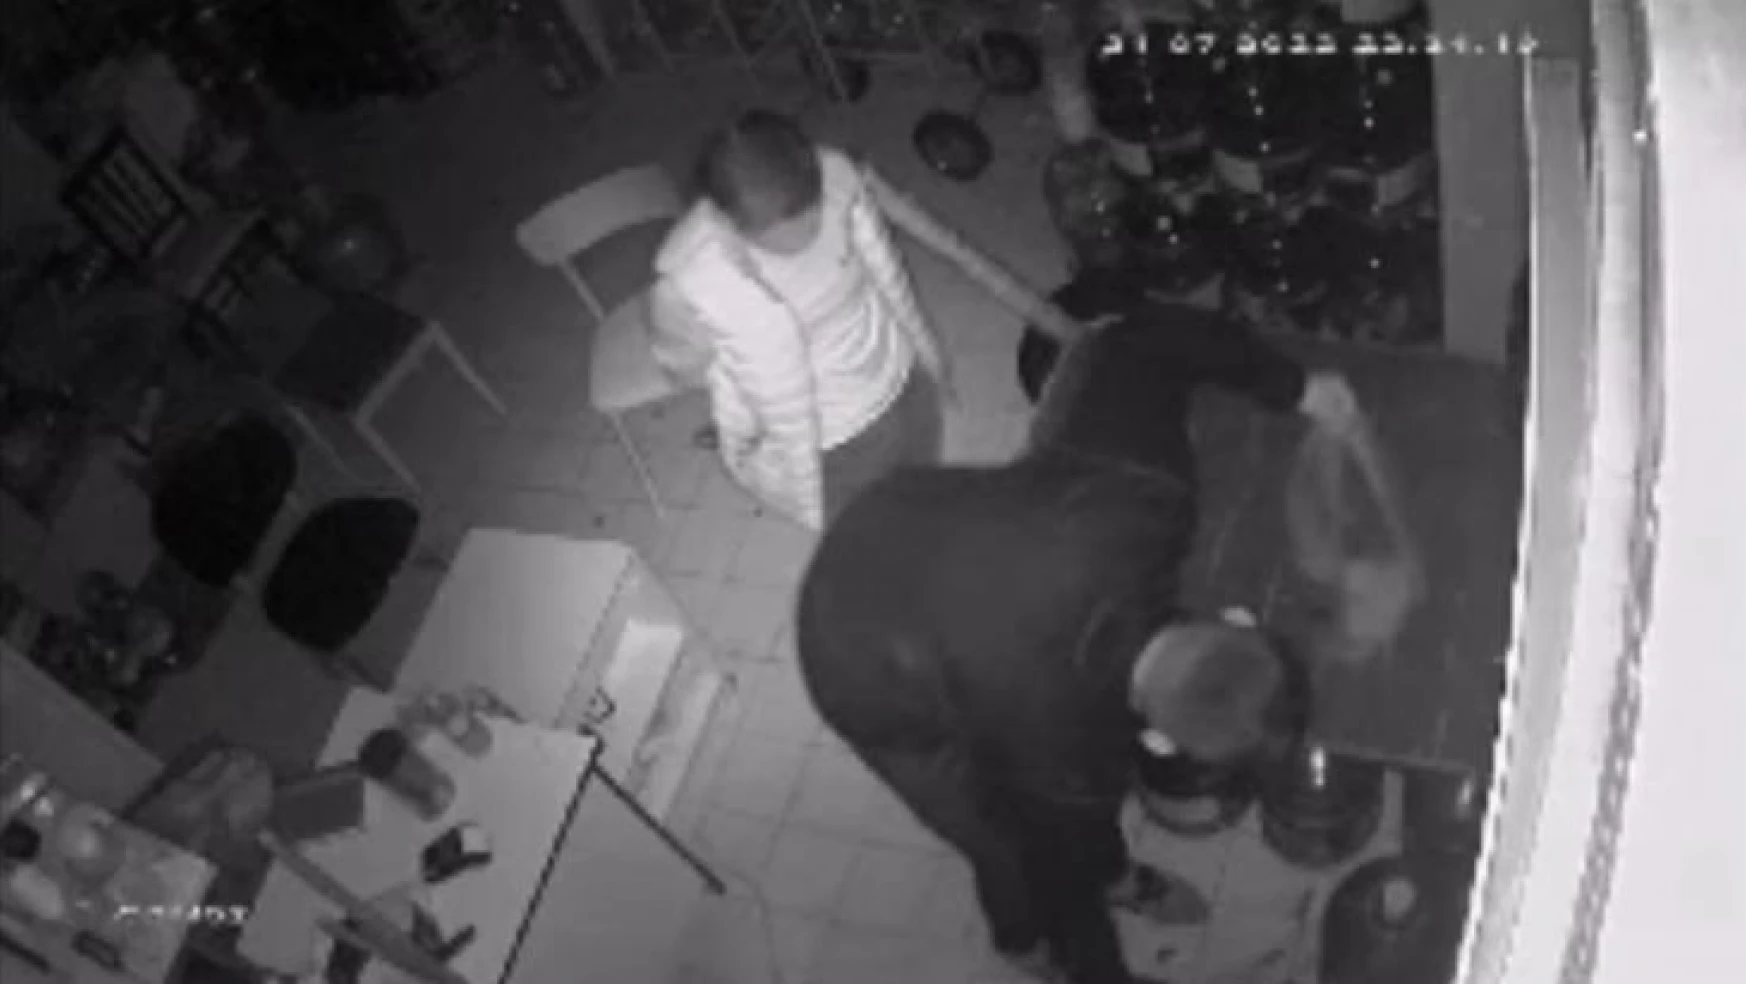 İstanbul'da ilginç hırsızlık kamerada: Piknik tüplerini çaldılar